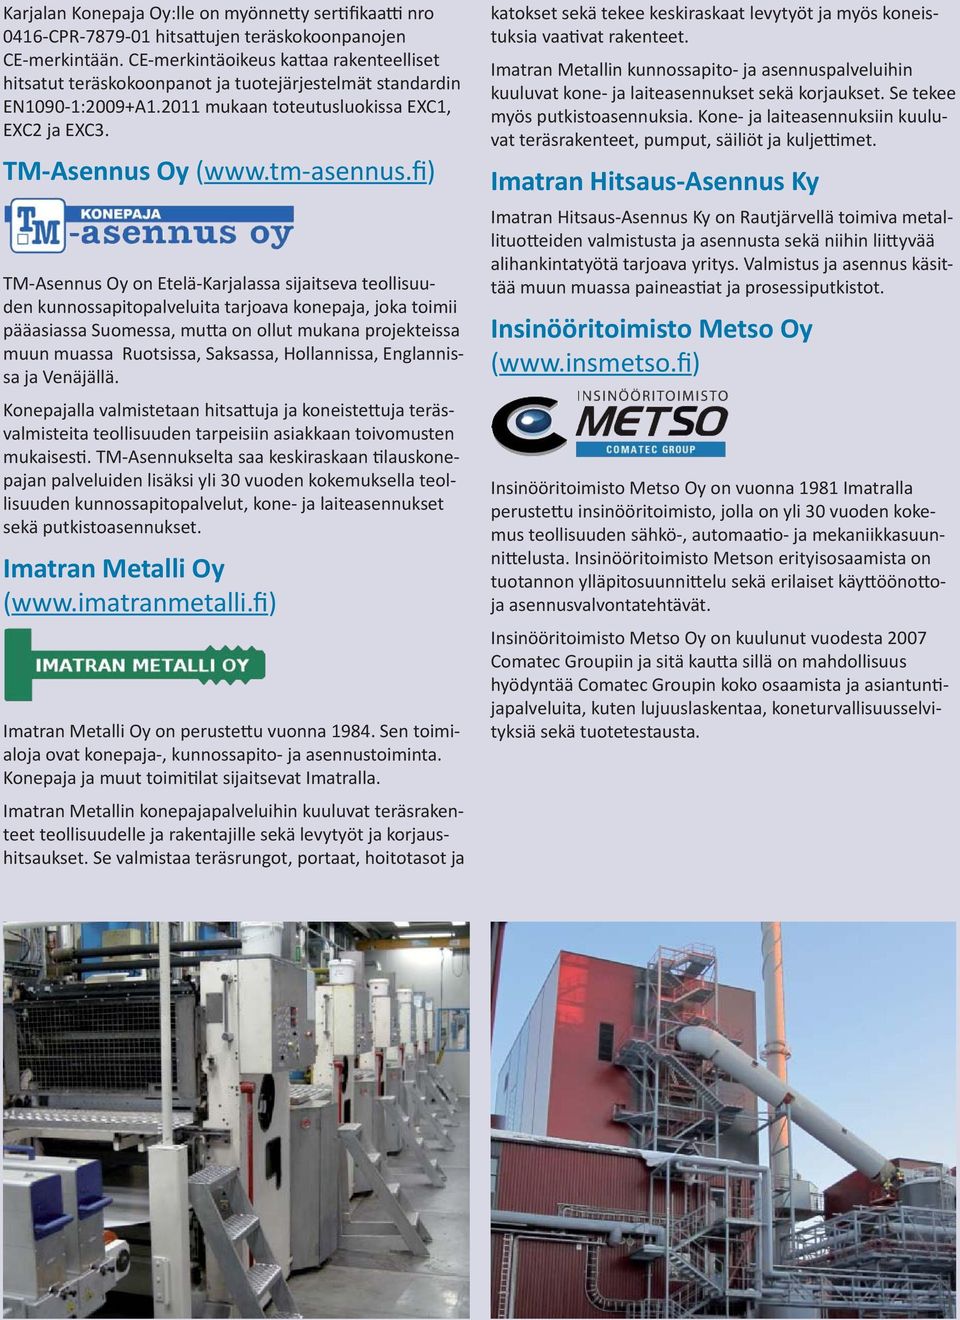 fi) TM-Asennus Oy on Etelä-Karjalassa sijaitseva teollisuuden kunnossapitopalveluita tarjoava konepaja, joka toimii pääasiassa Suomessa, mu a on ollut mukana projekteissa muun muassa Ruotsissa,